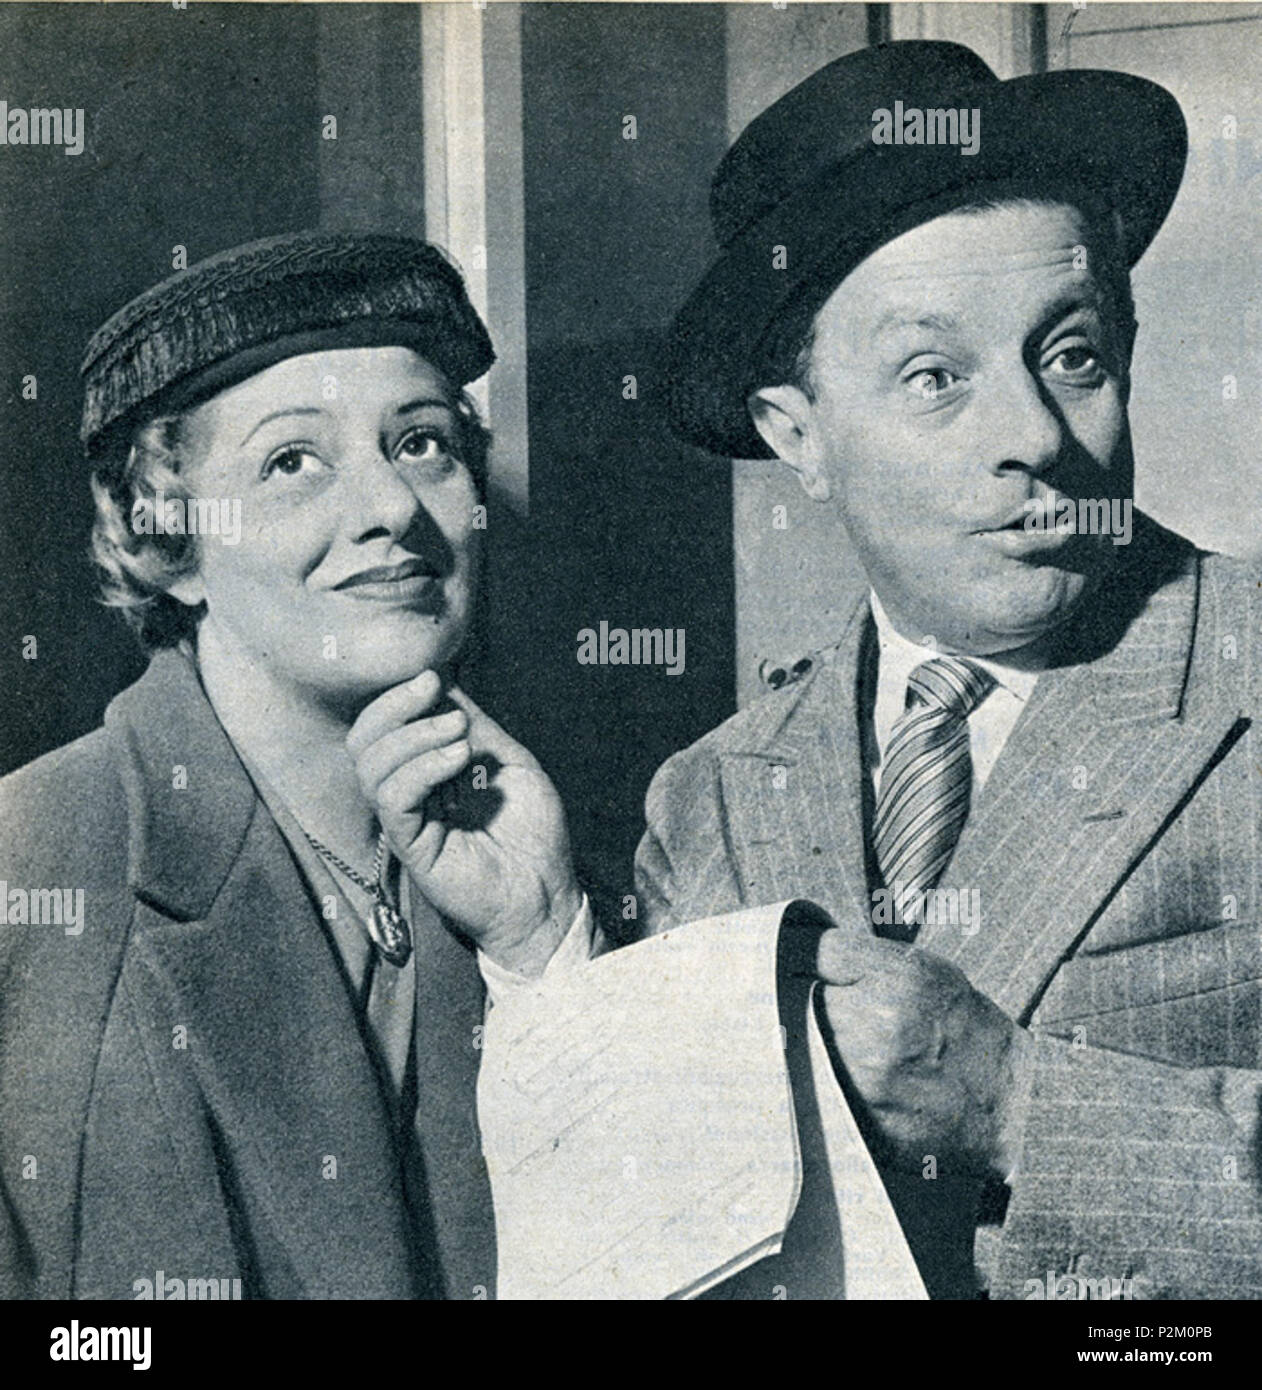 . Italiano: Gli attori Erika Sandri e Ermanno Roveri durante uno spettacolo RAI 1950 . 1950. 26 desconocido Erica Sandri e Ermanno Roveri Foto de stock